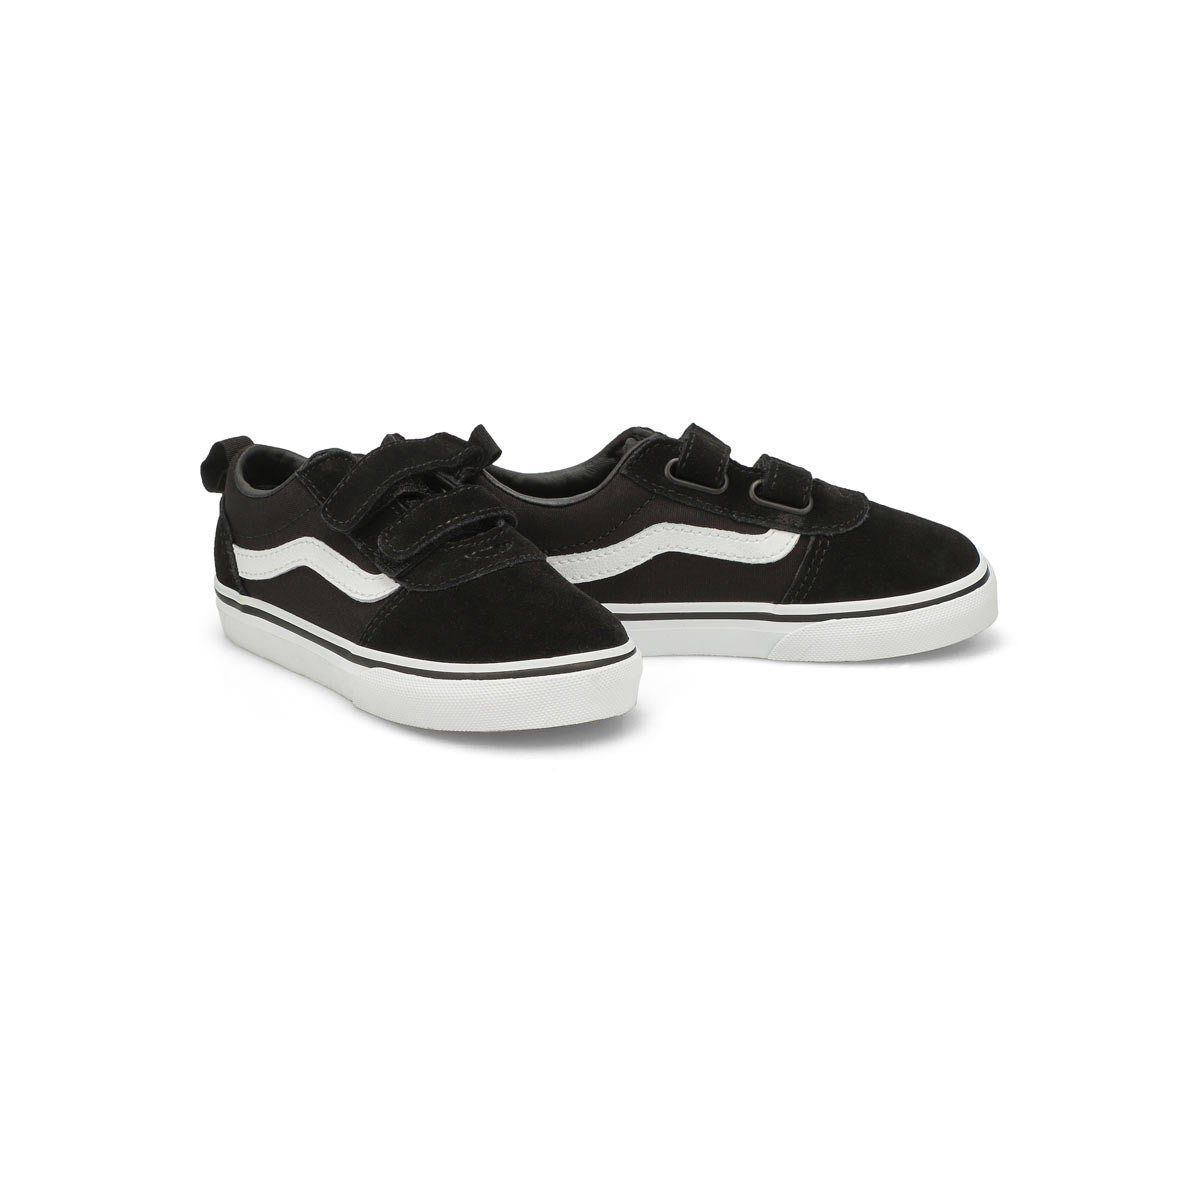 Infants' Ward V Sneaker - Black/ White